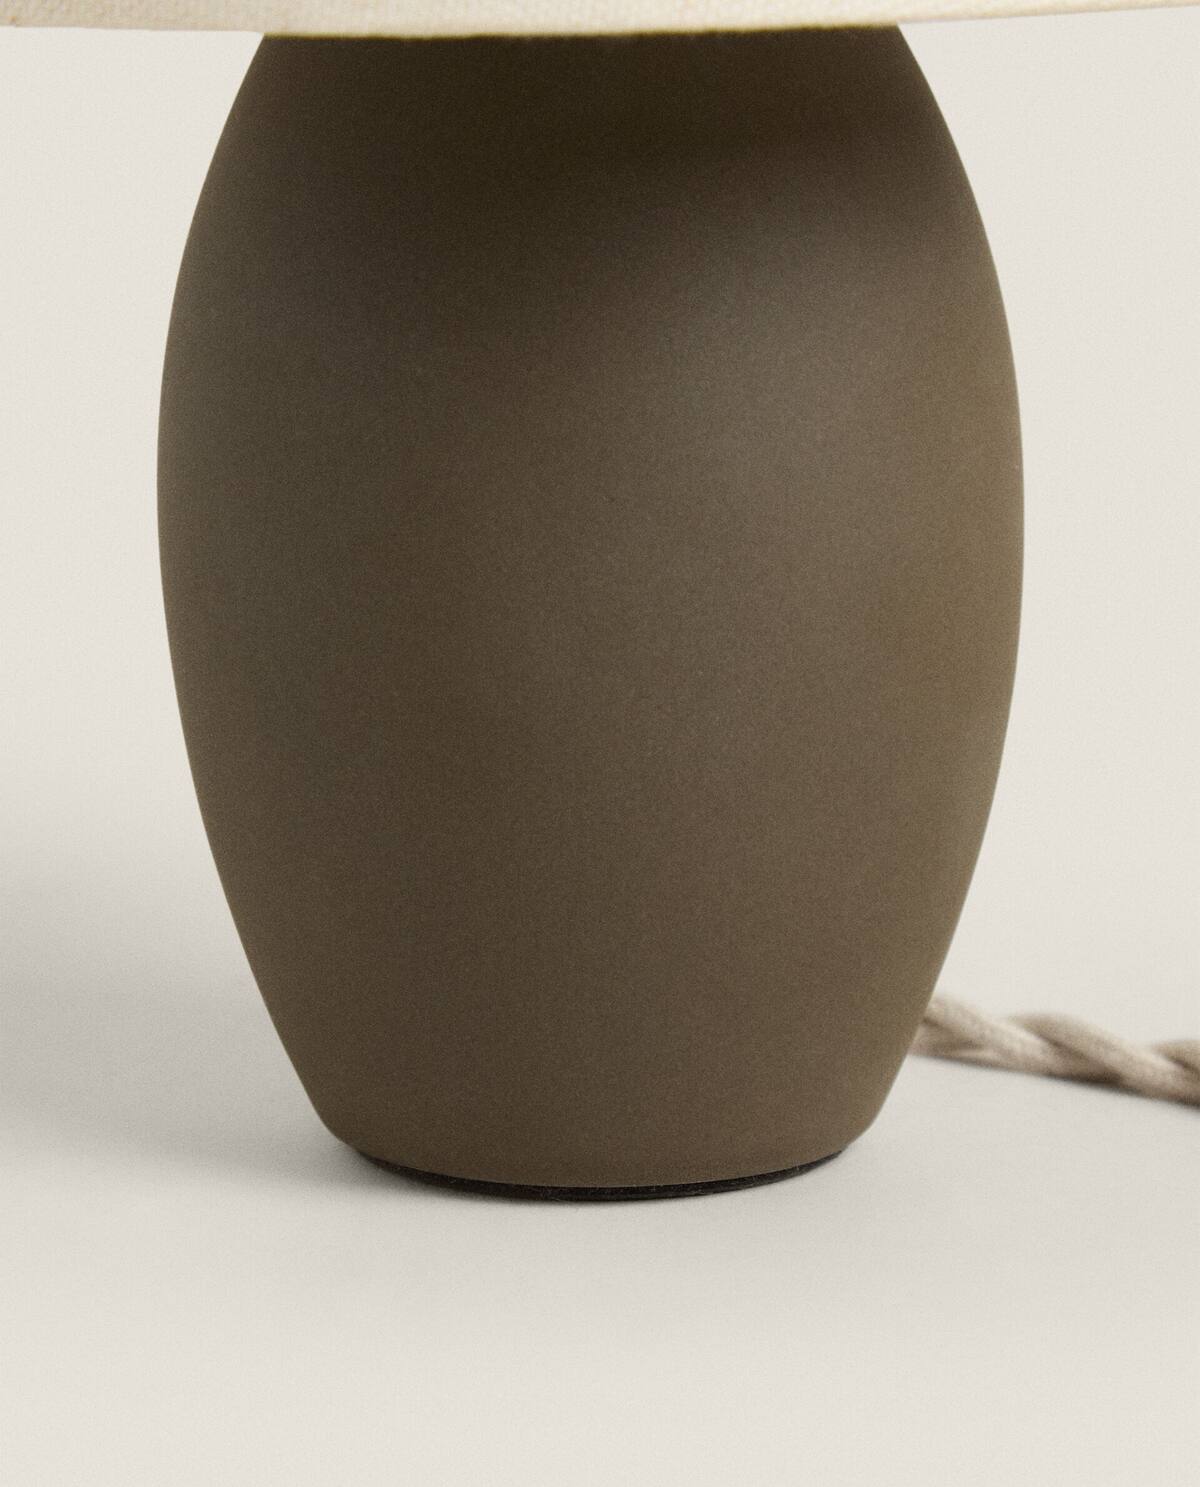 Lámpara de mesa de cerámica